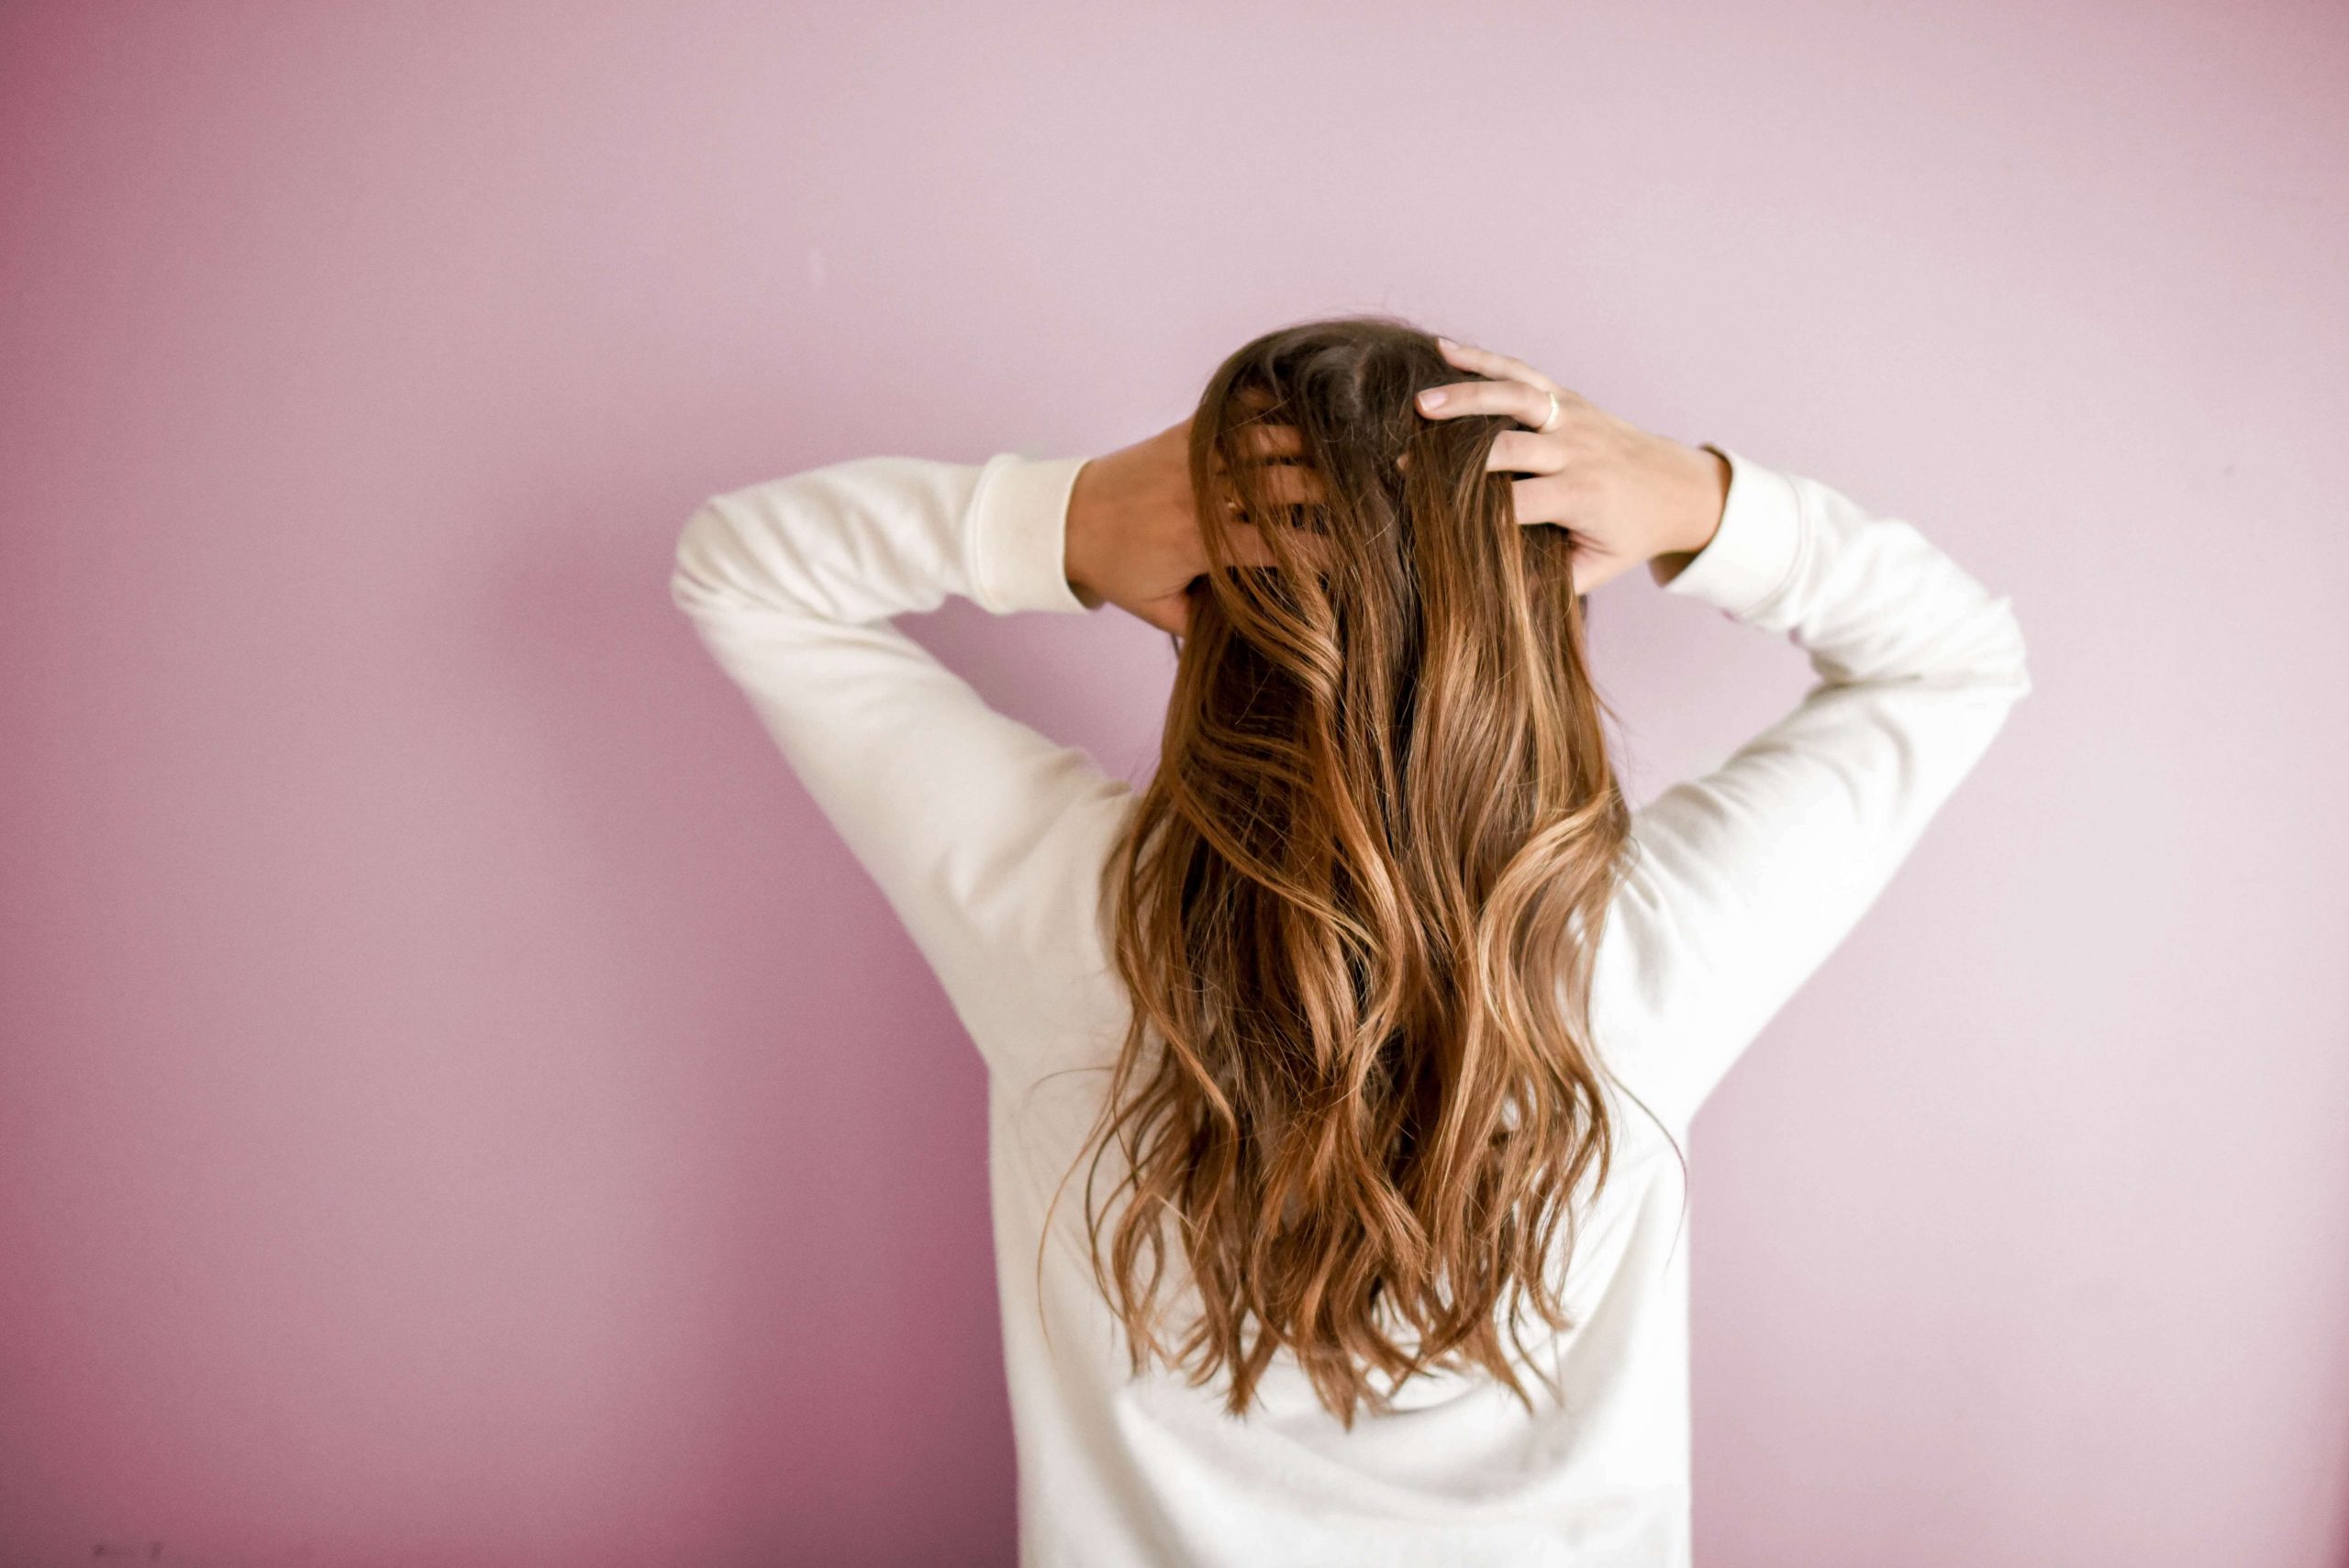 Jak stosować suplementy, aby odzyskać piękne włosy